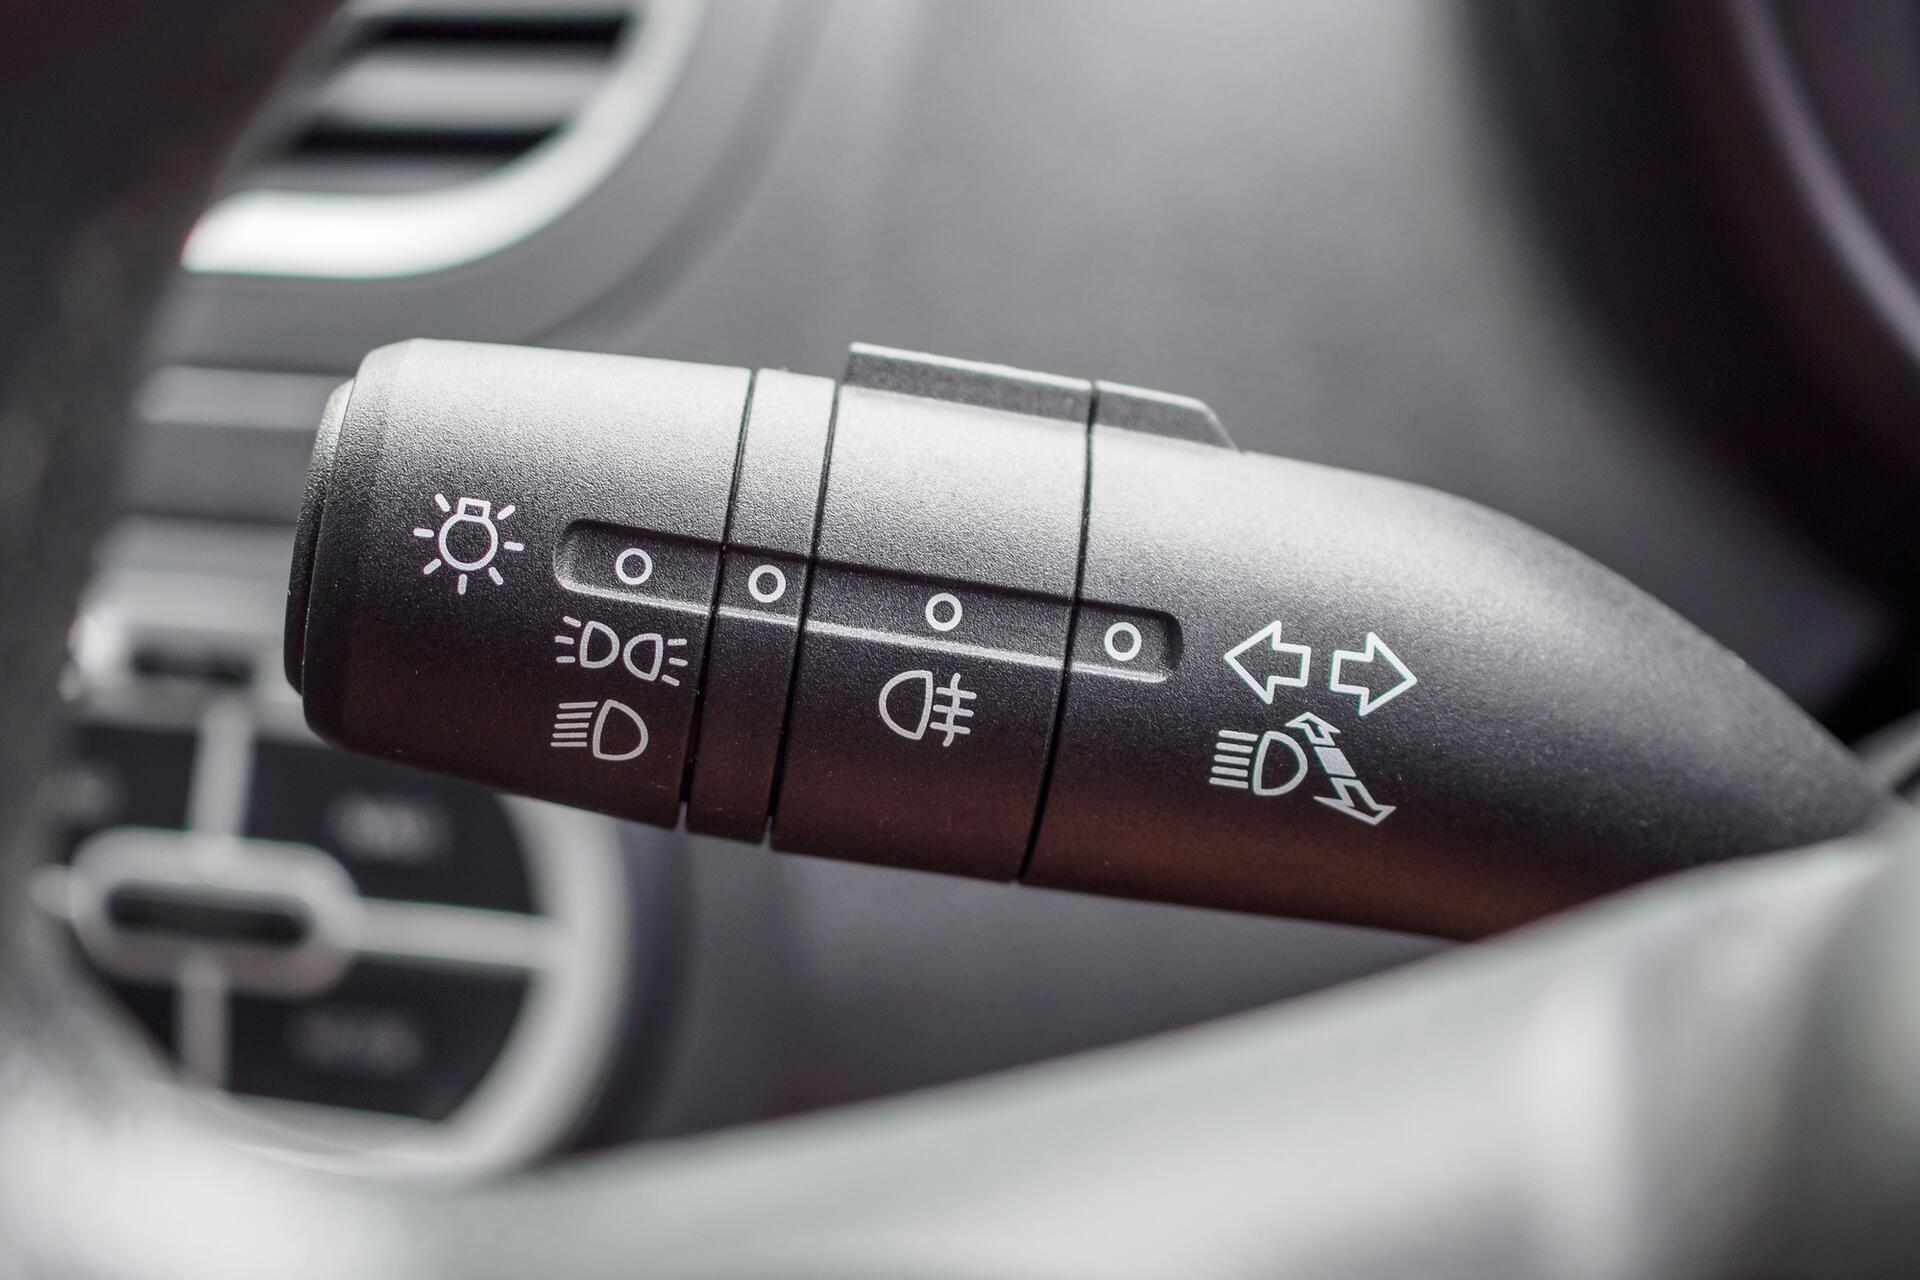 Znáte veškeré kontrolky světel v autě?